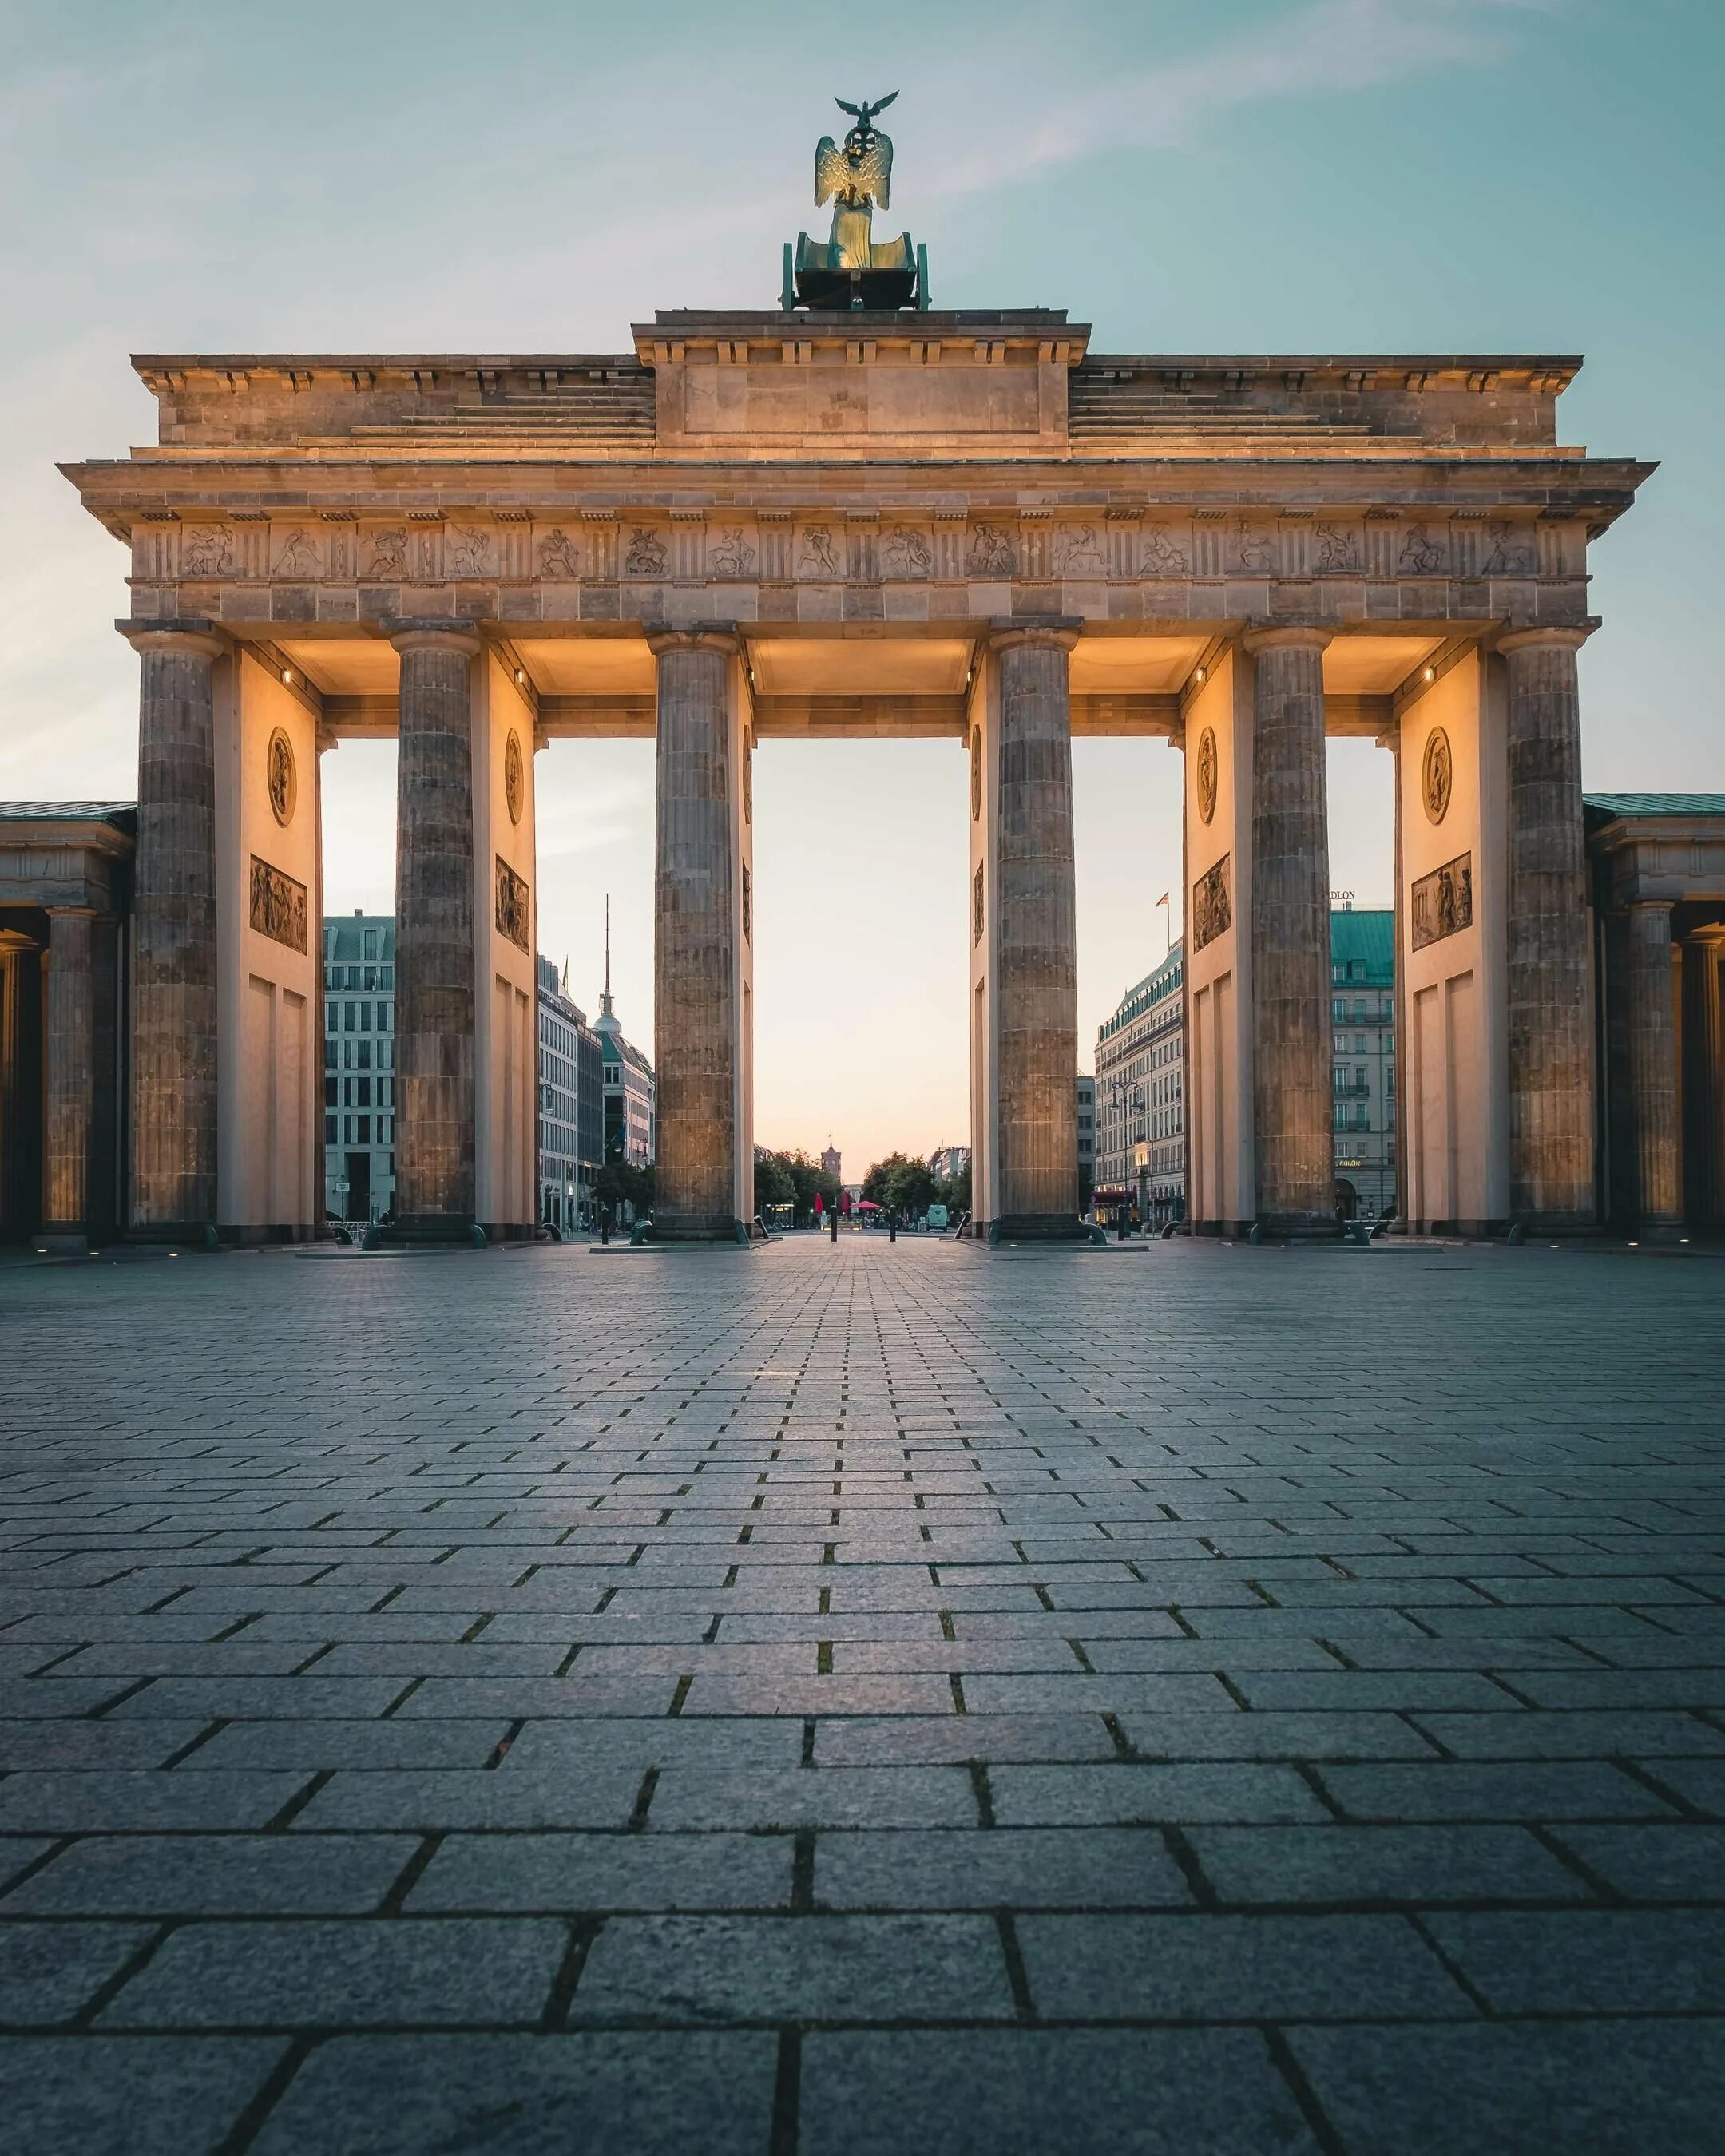 Германия основное. Германия Берлин Бранденбургские ворота. Достопримечательности Берлина Бранденбургские ворота. Арка Бранденбургских ворот Берлин. Брандербурски еворота.